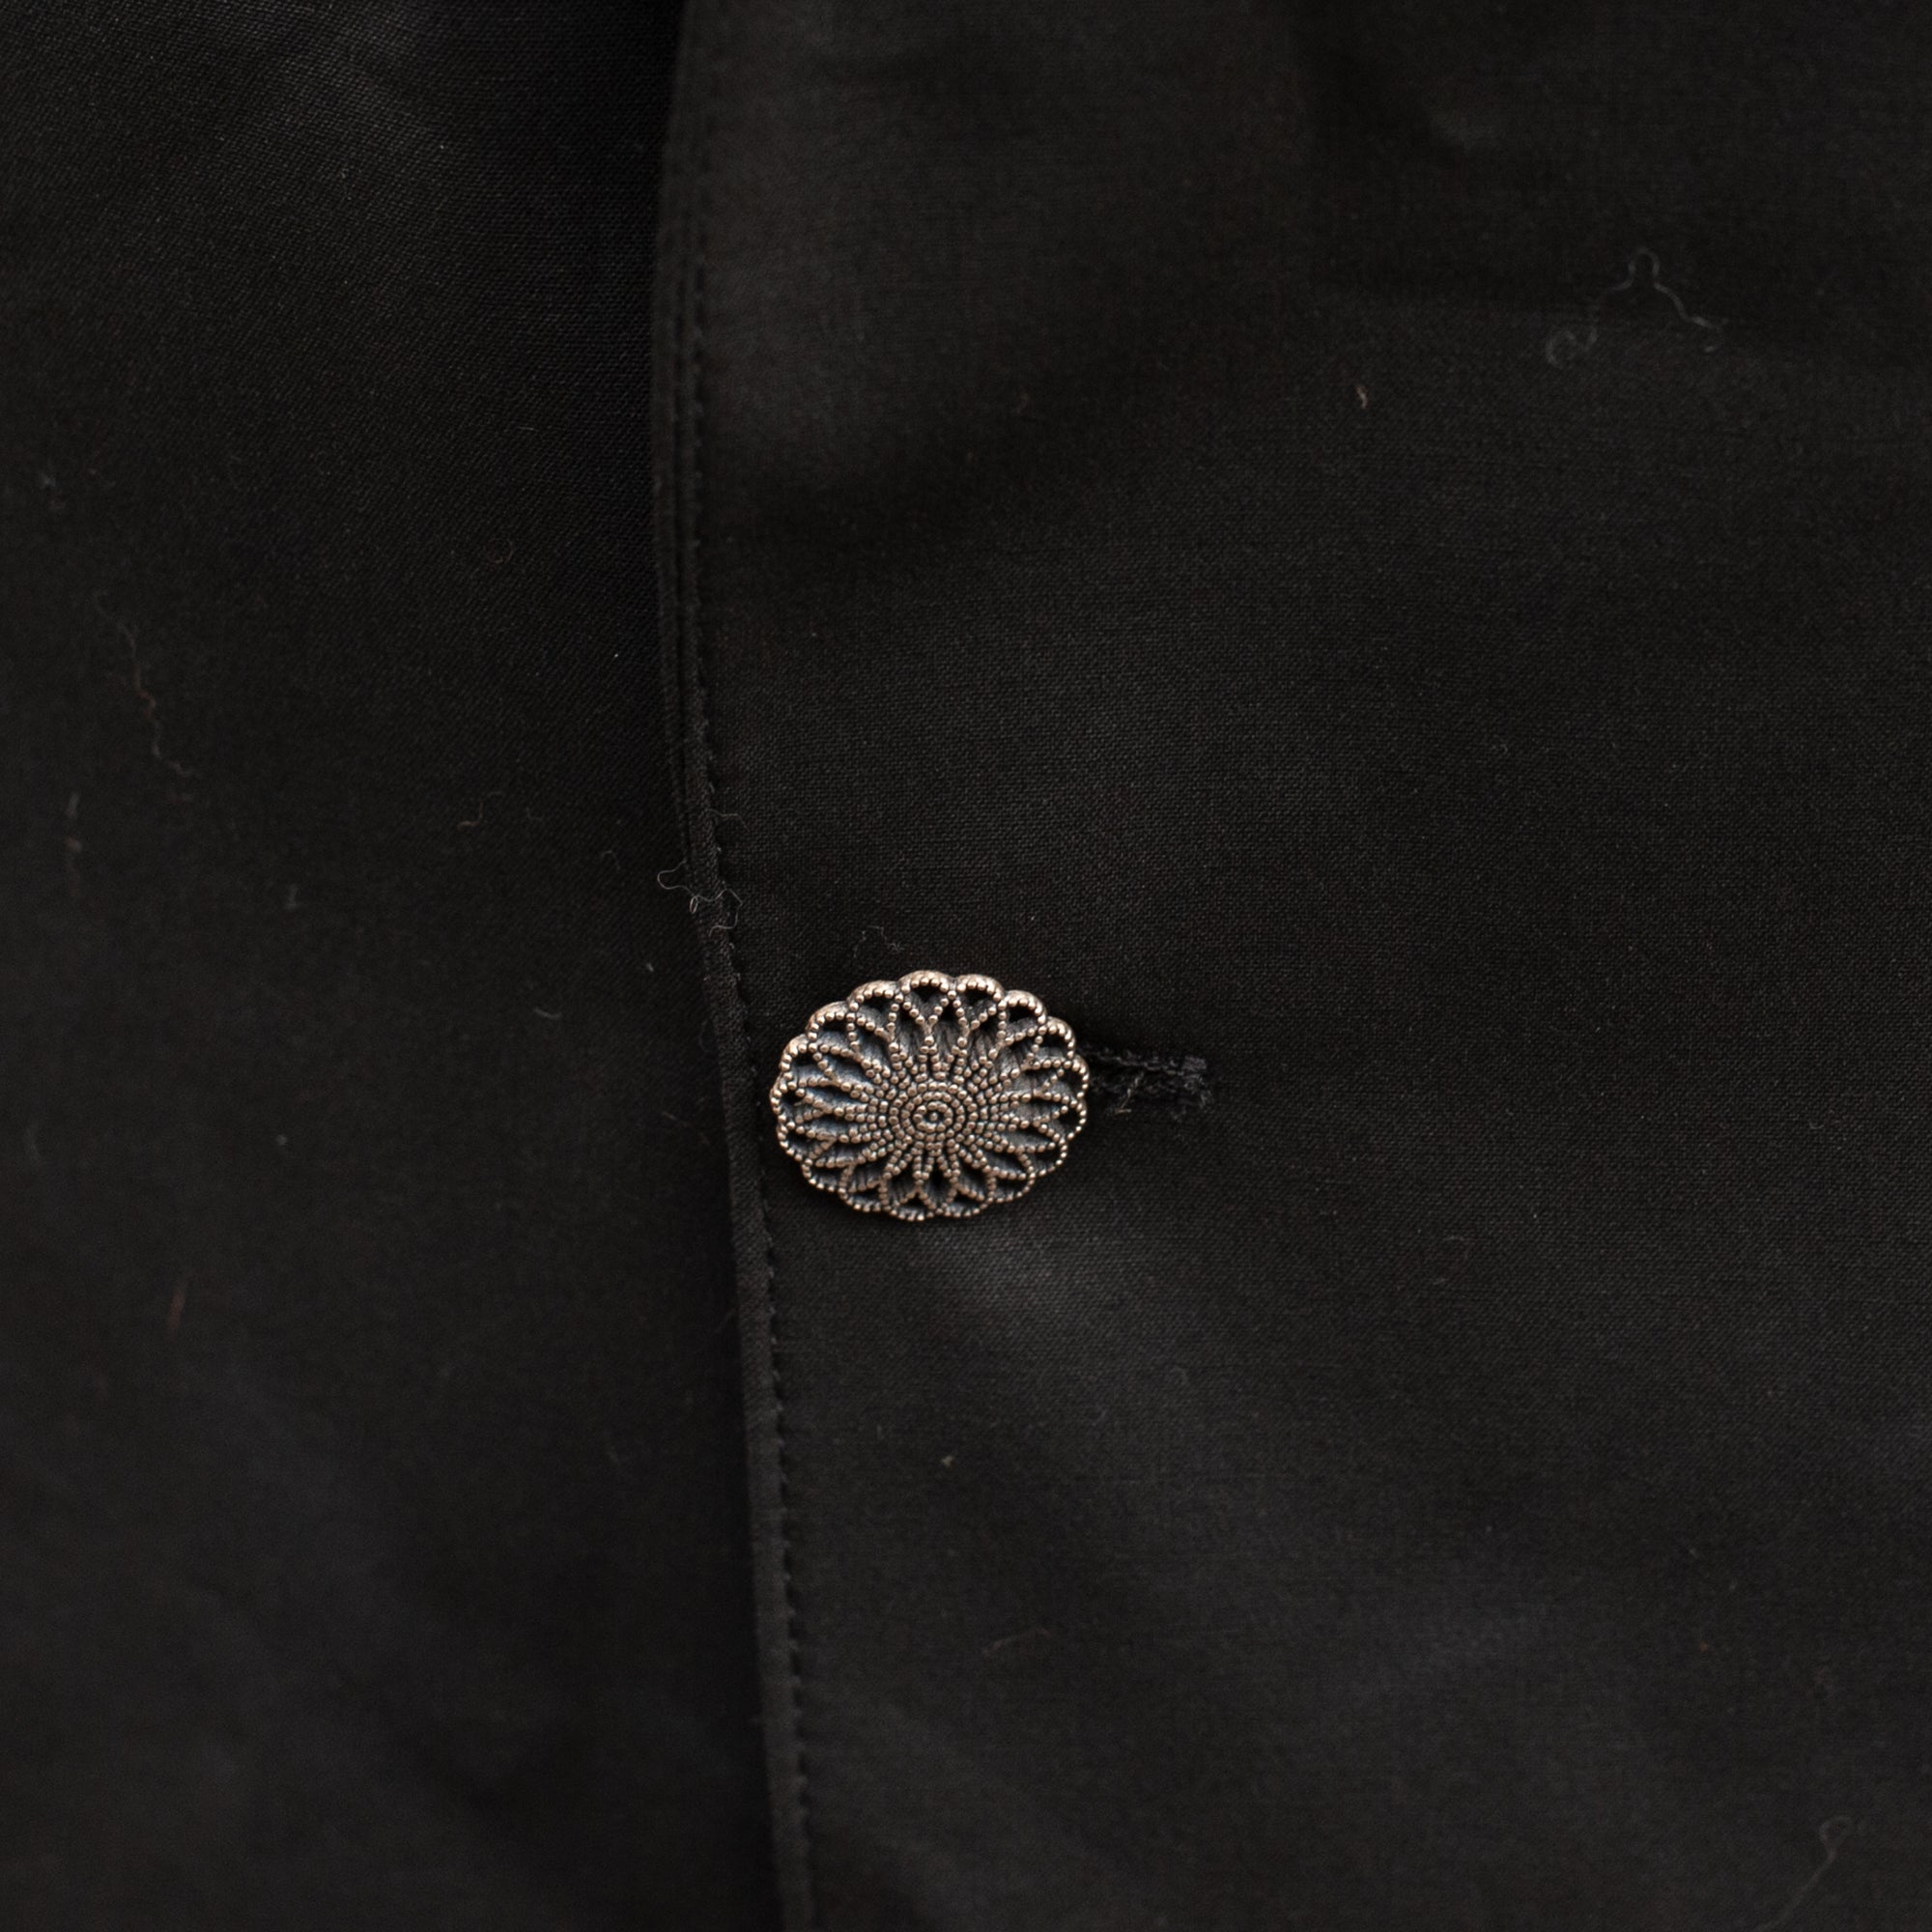 Jean Paul Gaultier Blazer Jacket (Black) UK 8-12